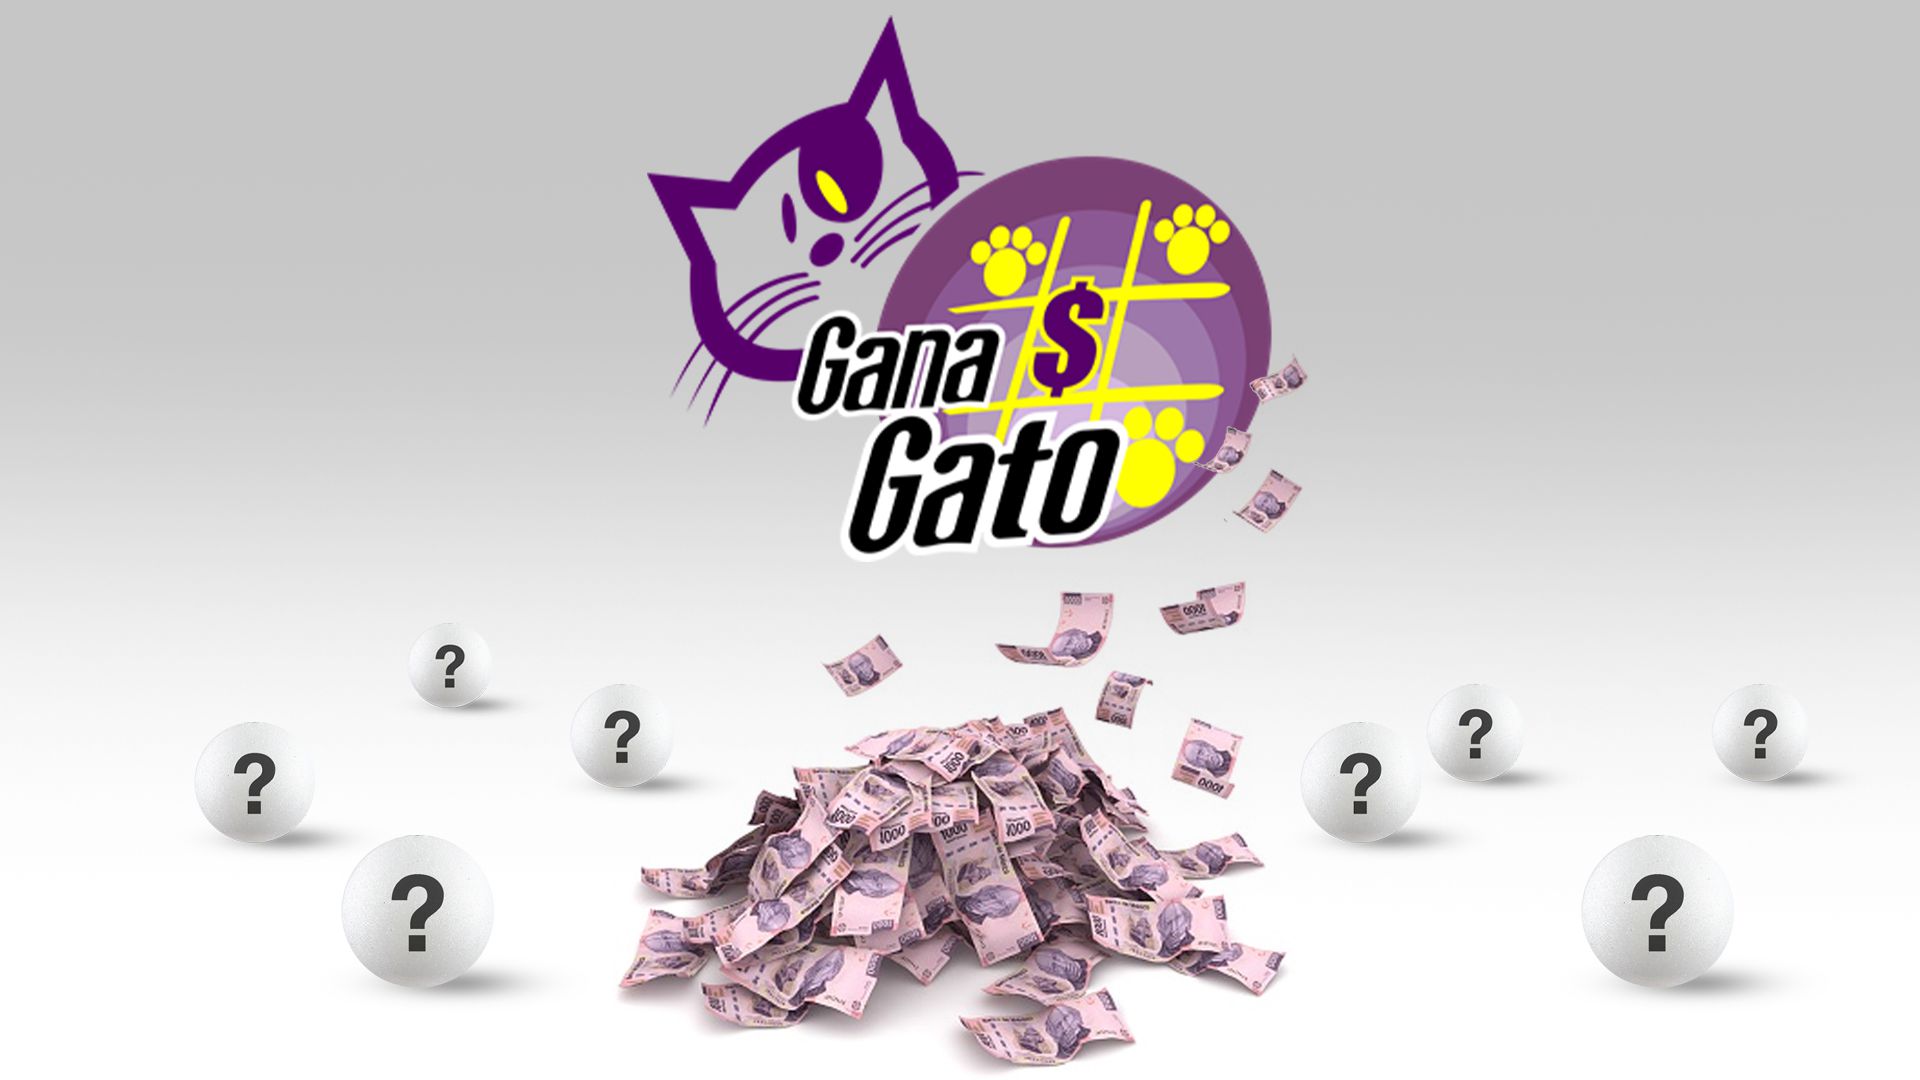 Lotería Nacional: ganadores del sorteo 2549 de Gana Gato